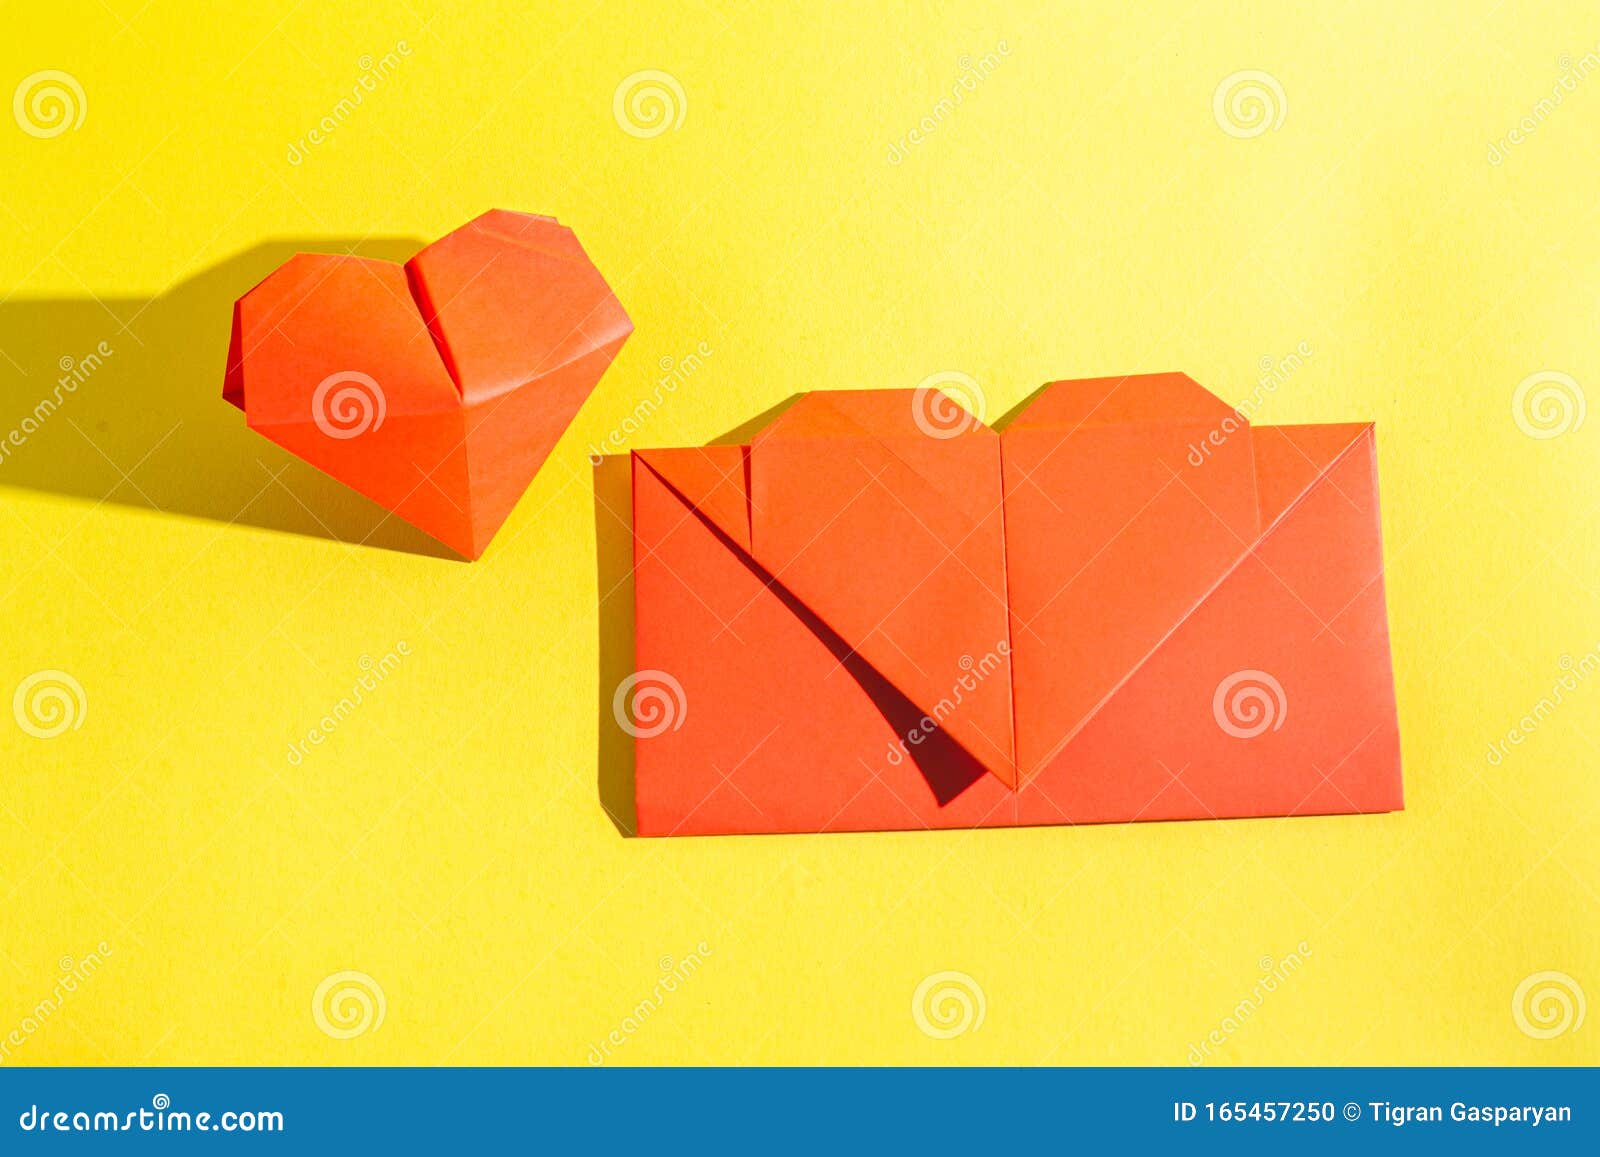 Делаем оригами-конверт из листа бумаги